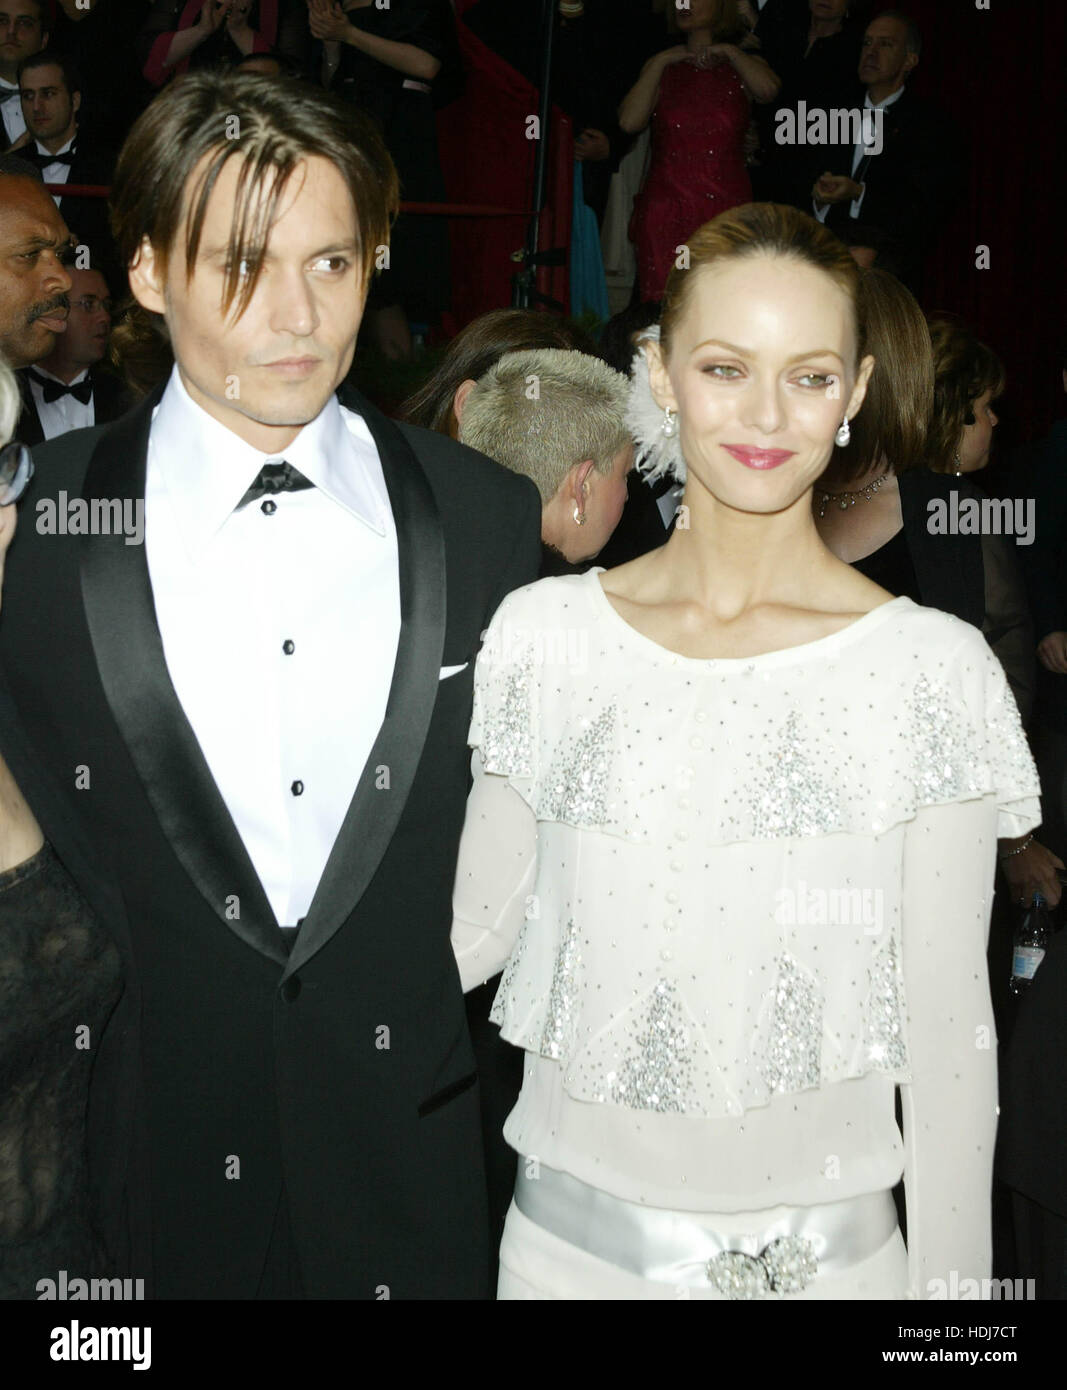 Schauspieler Johnny Depp mit Freundin Vanessa Paradis (r) bei den Academy Awards in Hollywood, Kalifornien am 29. Februar 2004.  Bildnachweis: Francis Specker Stockfoto